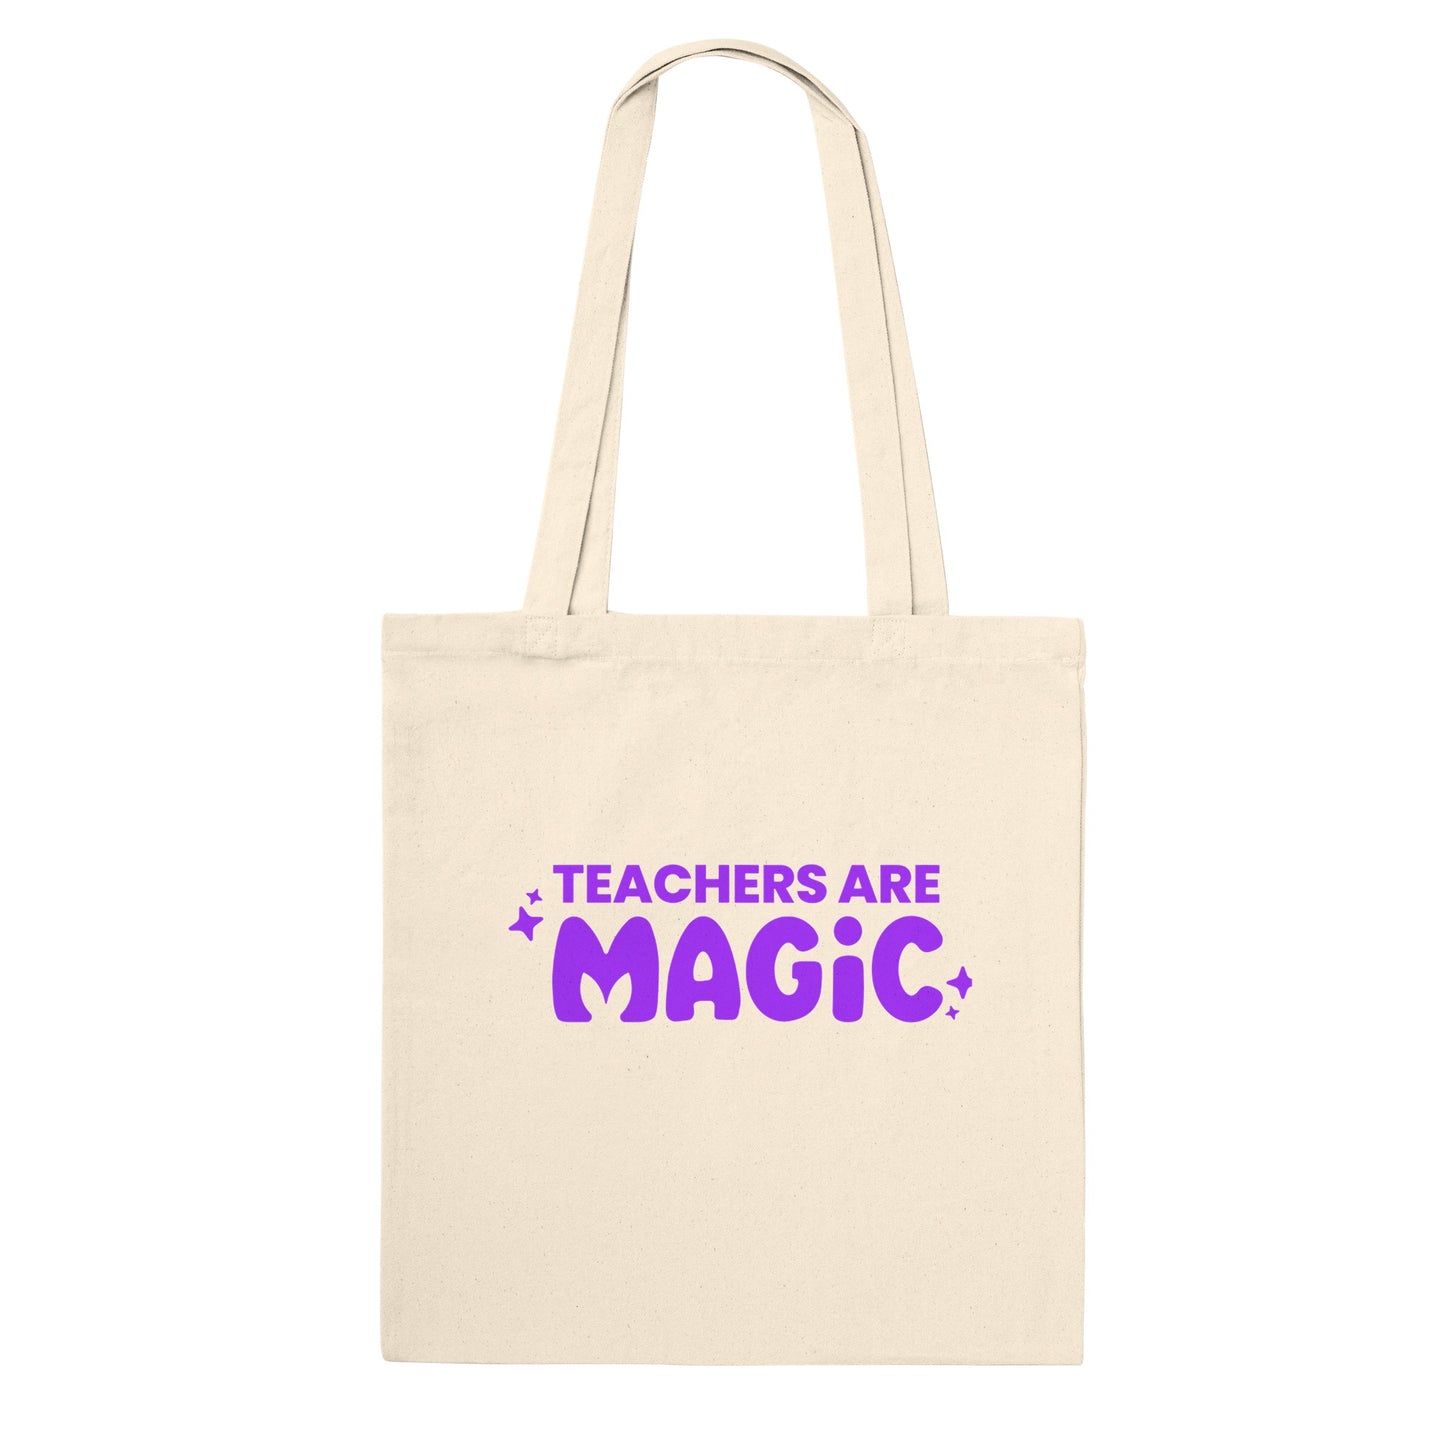 NEW 100% Cotton Premium Tote Bag – MagicSchool.ai Shop